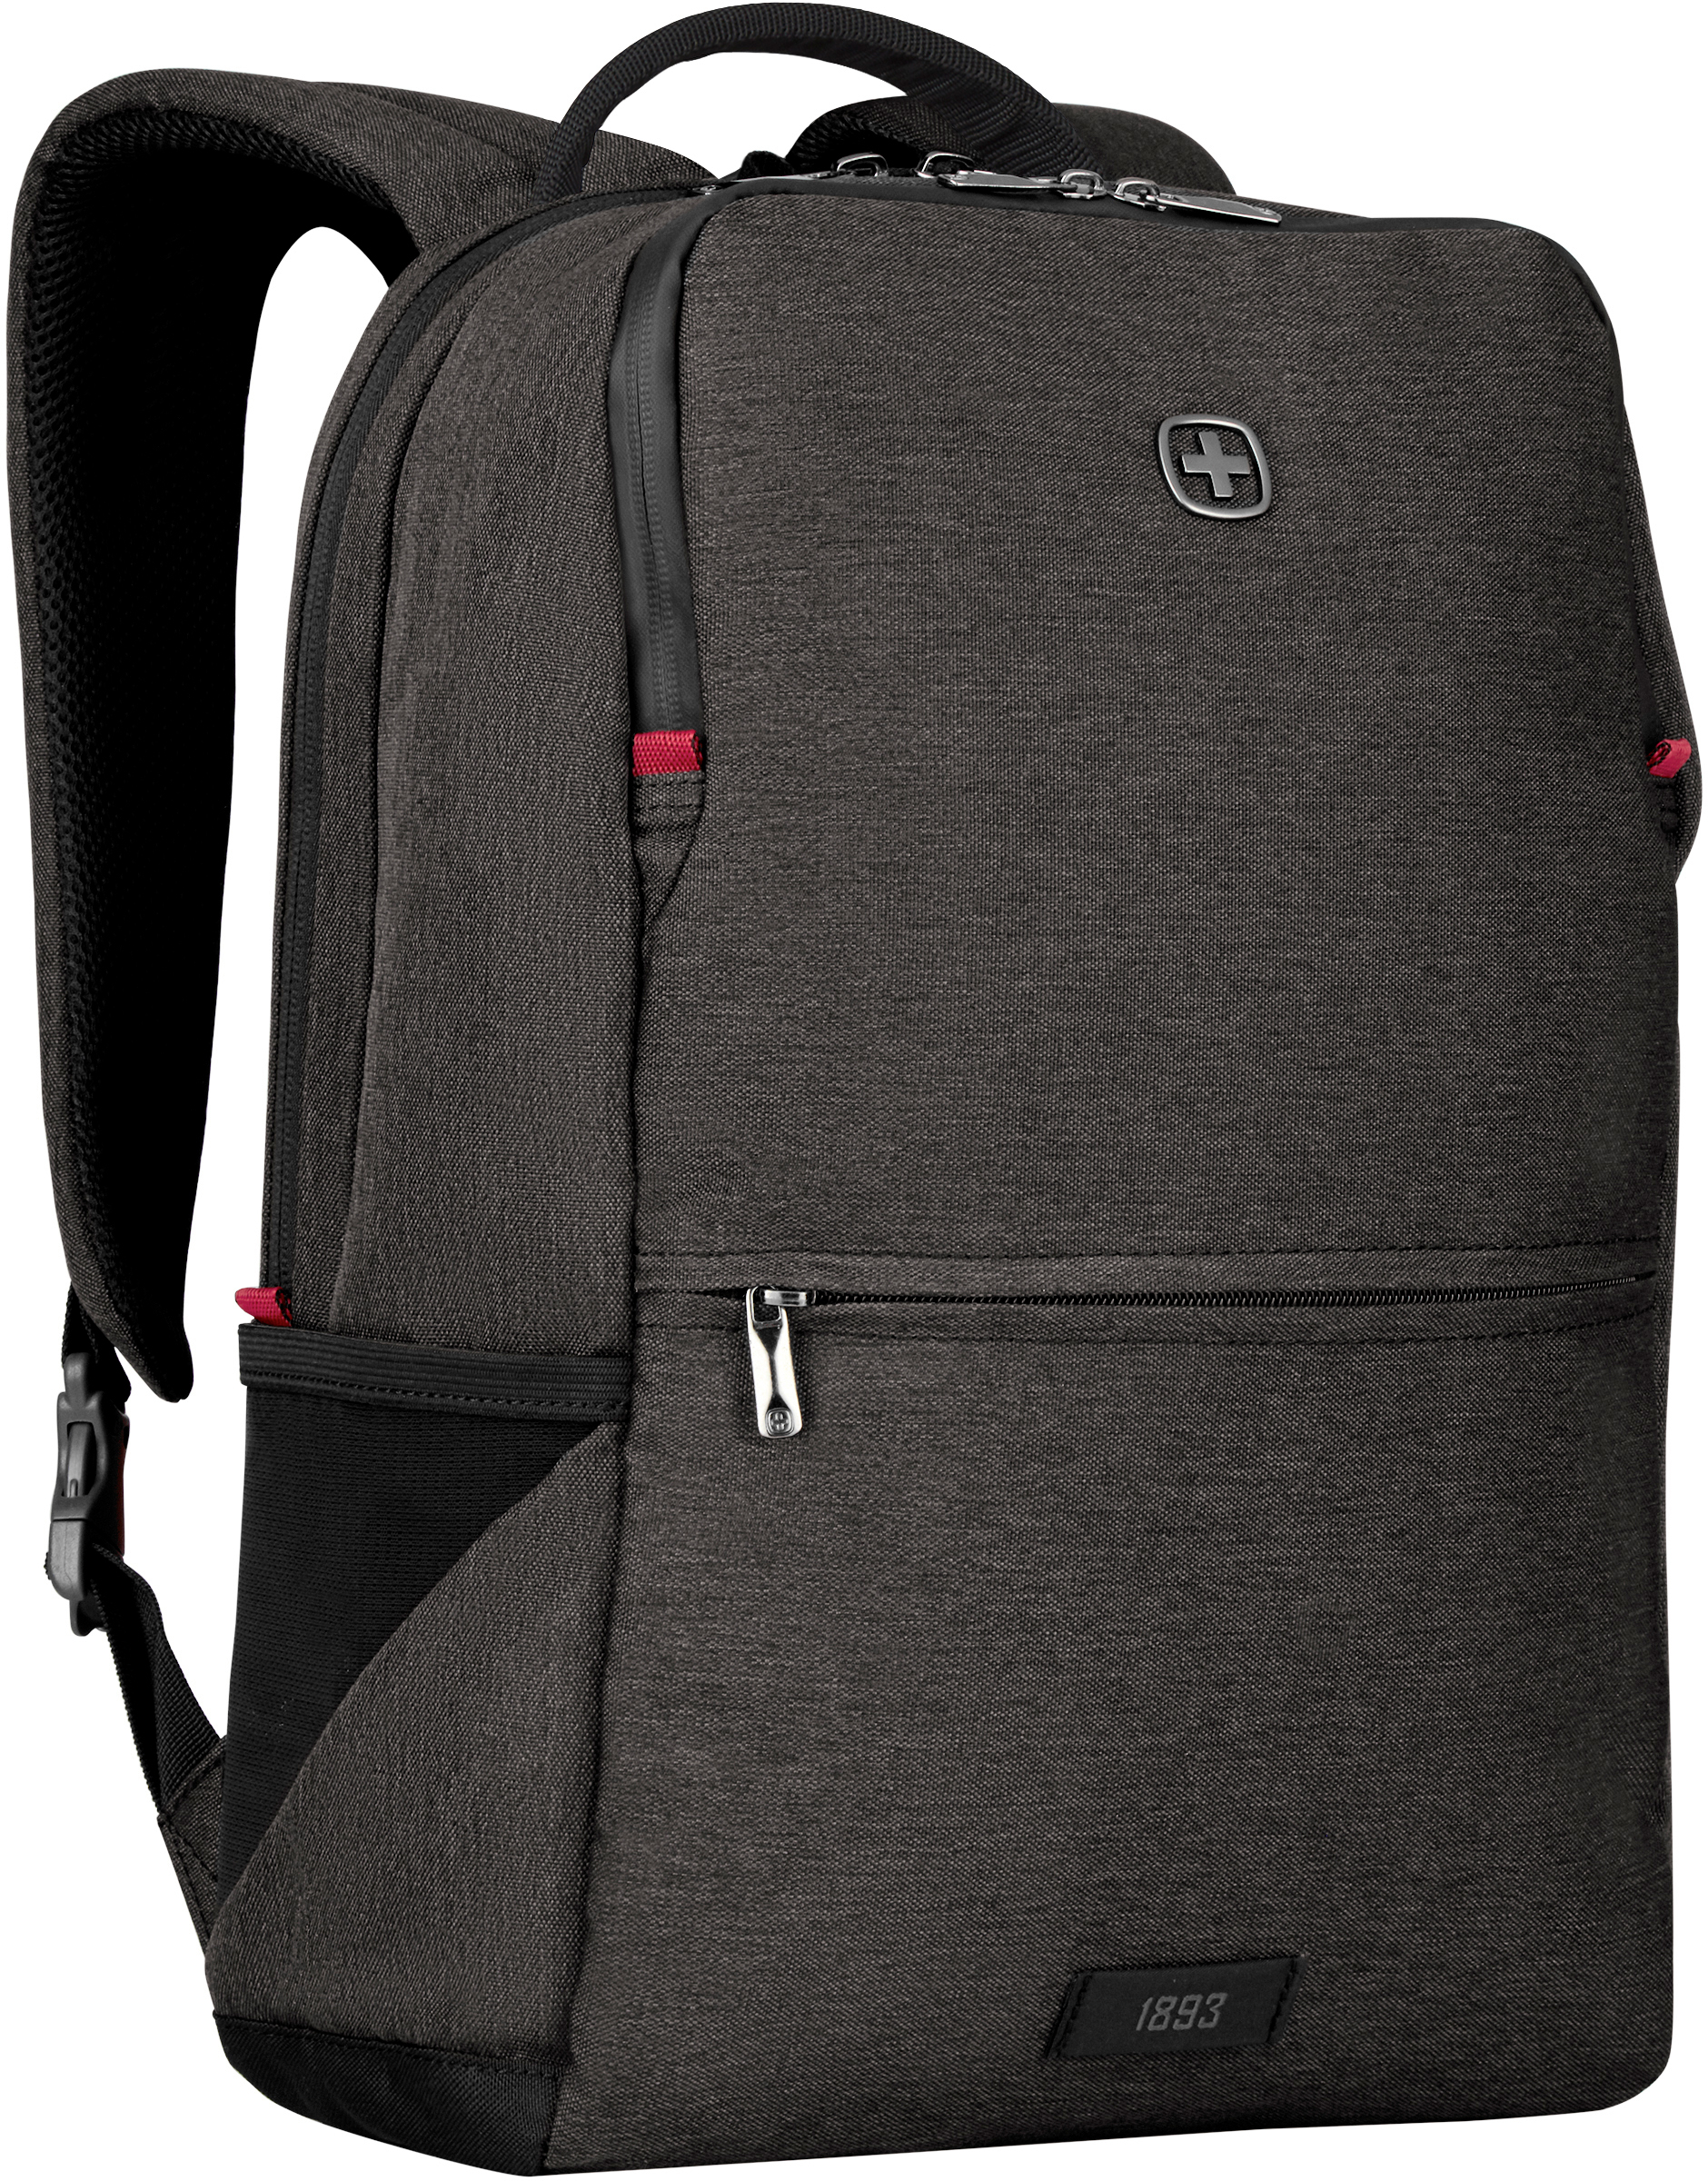 WENGER MX Reload 16 inch 611643 Laptop Backpack